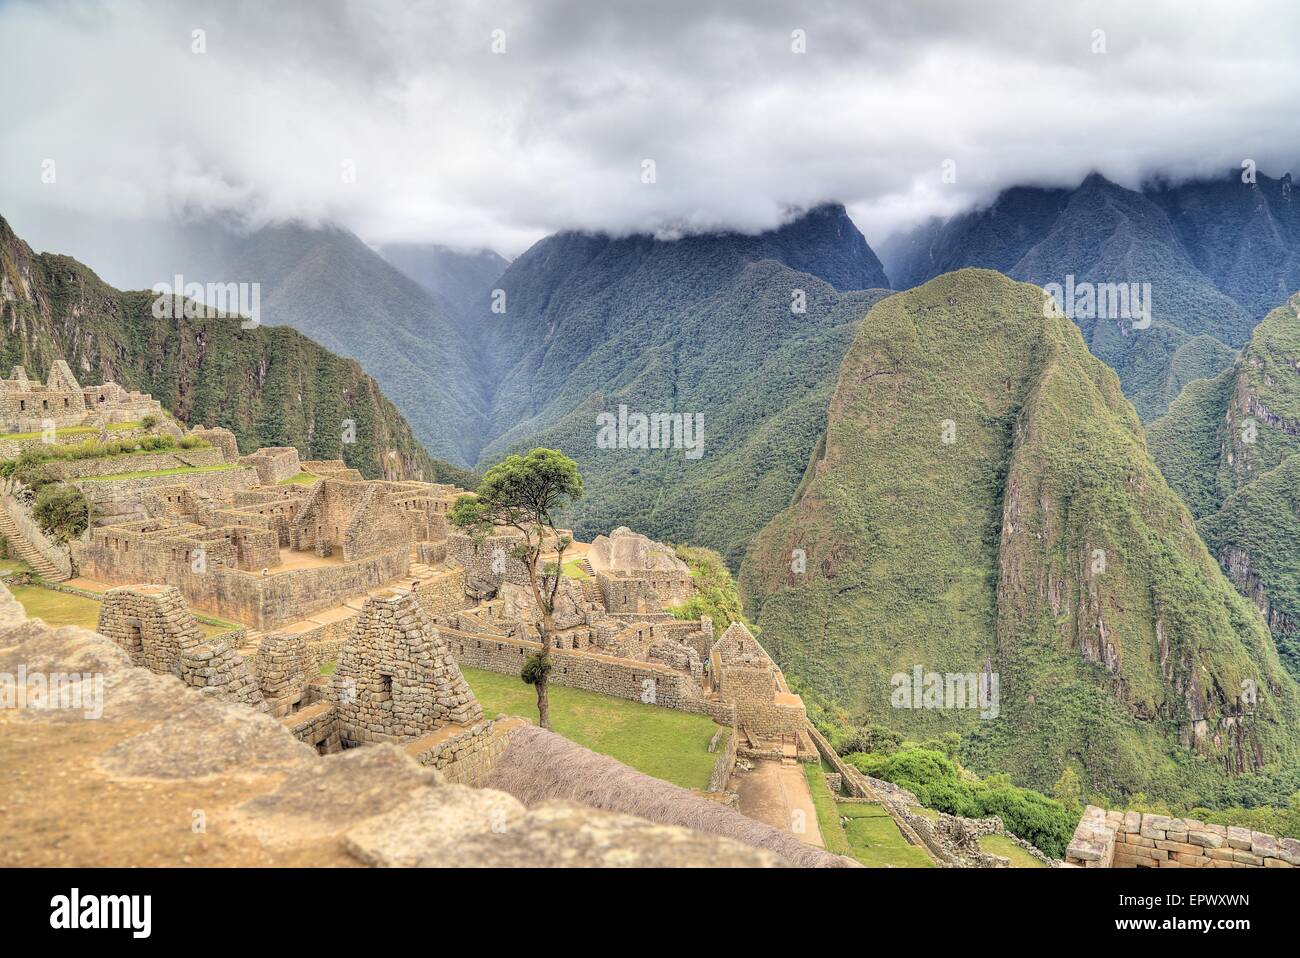 Le Machu Picchu, une citadelle Inca situé en altitude, dans la cordillère des Andes, au Pérou, au-dessus de la vallée de la rivière Urubamba Banque D'Images